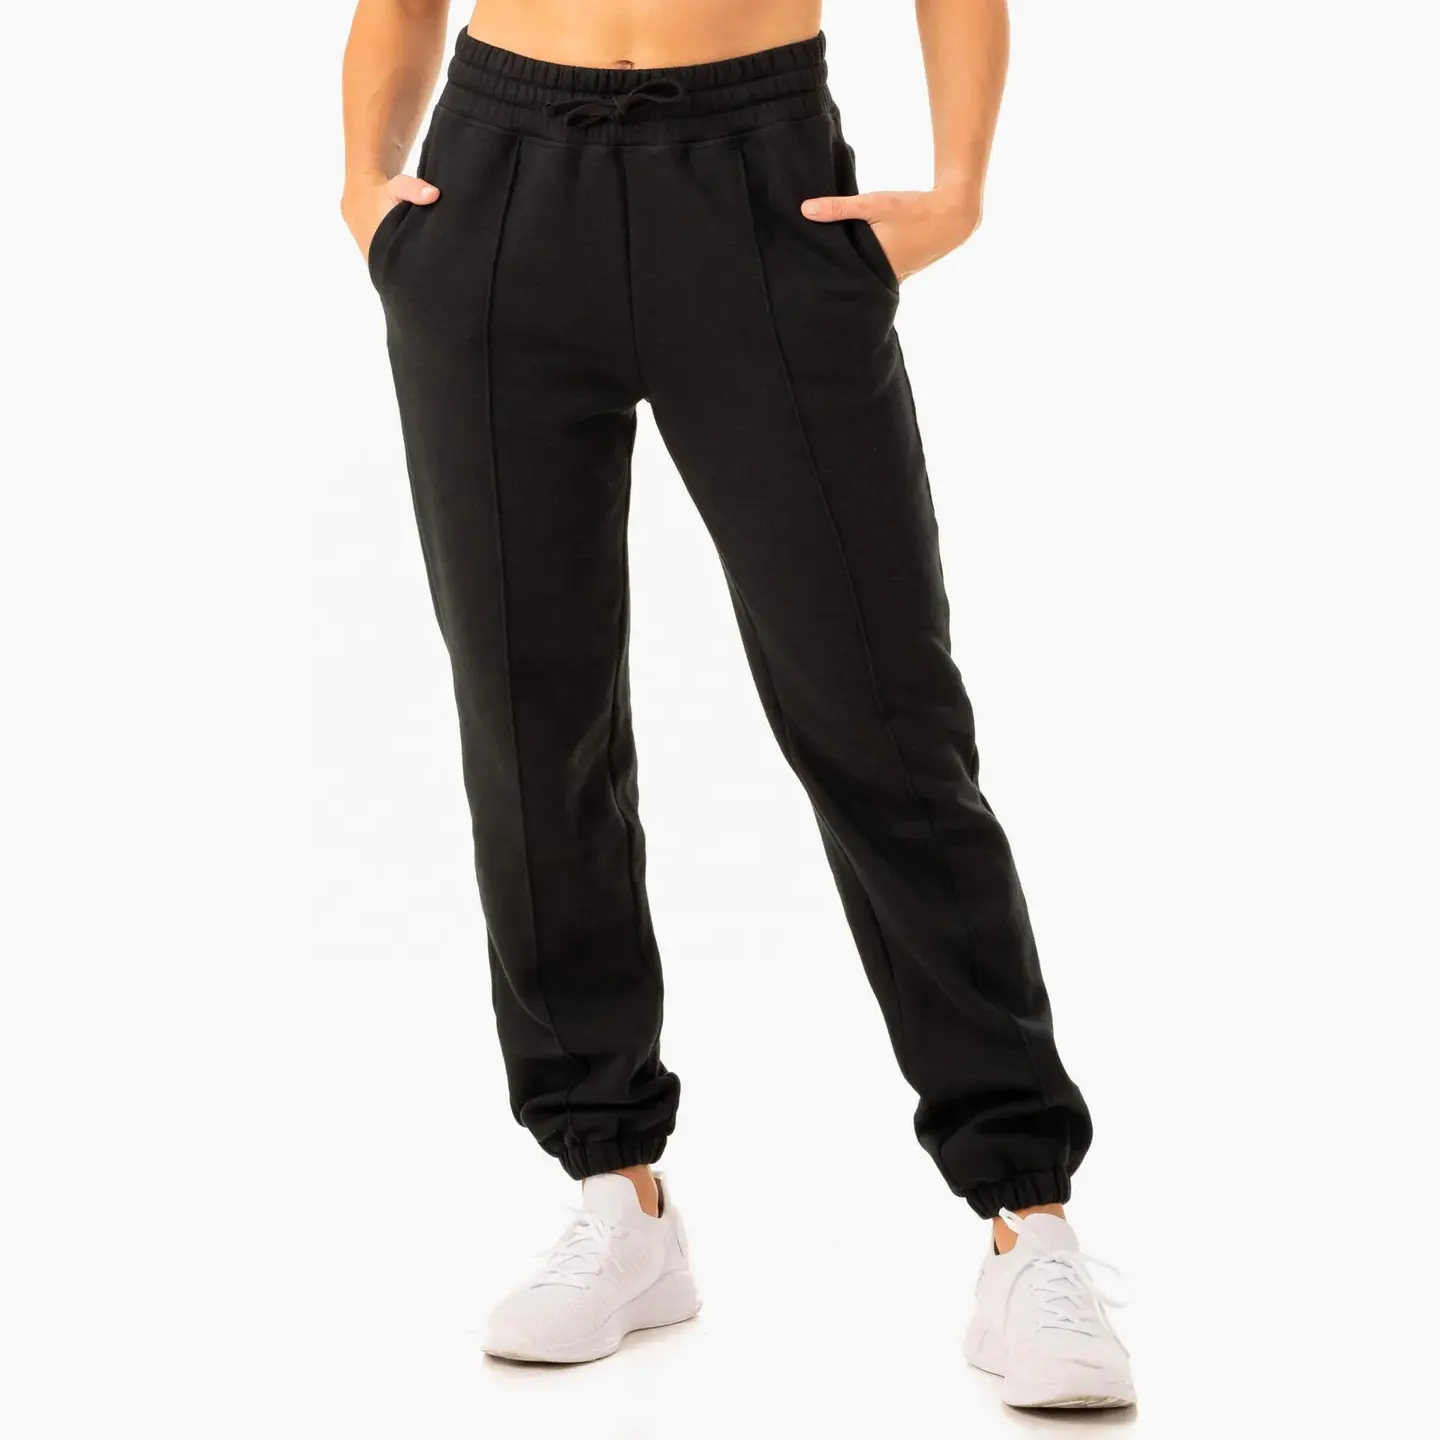 Yeni varış özel Logo yüksek belli kadın pantolon spor atletik bayanlar için eşofman altları günlük joggers sweatpants